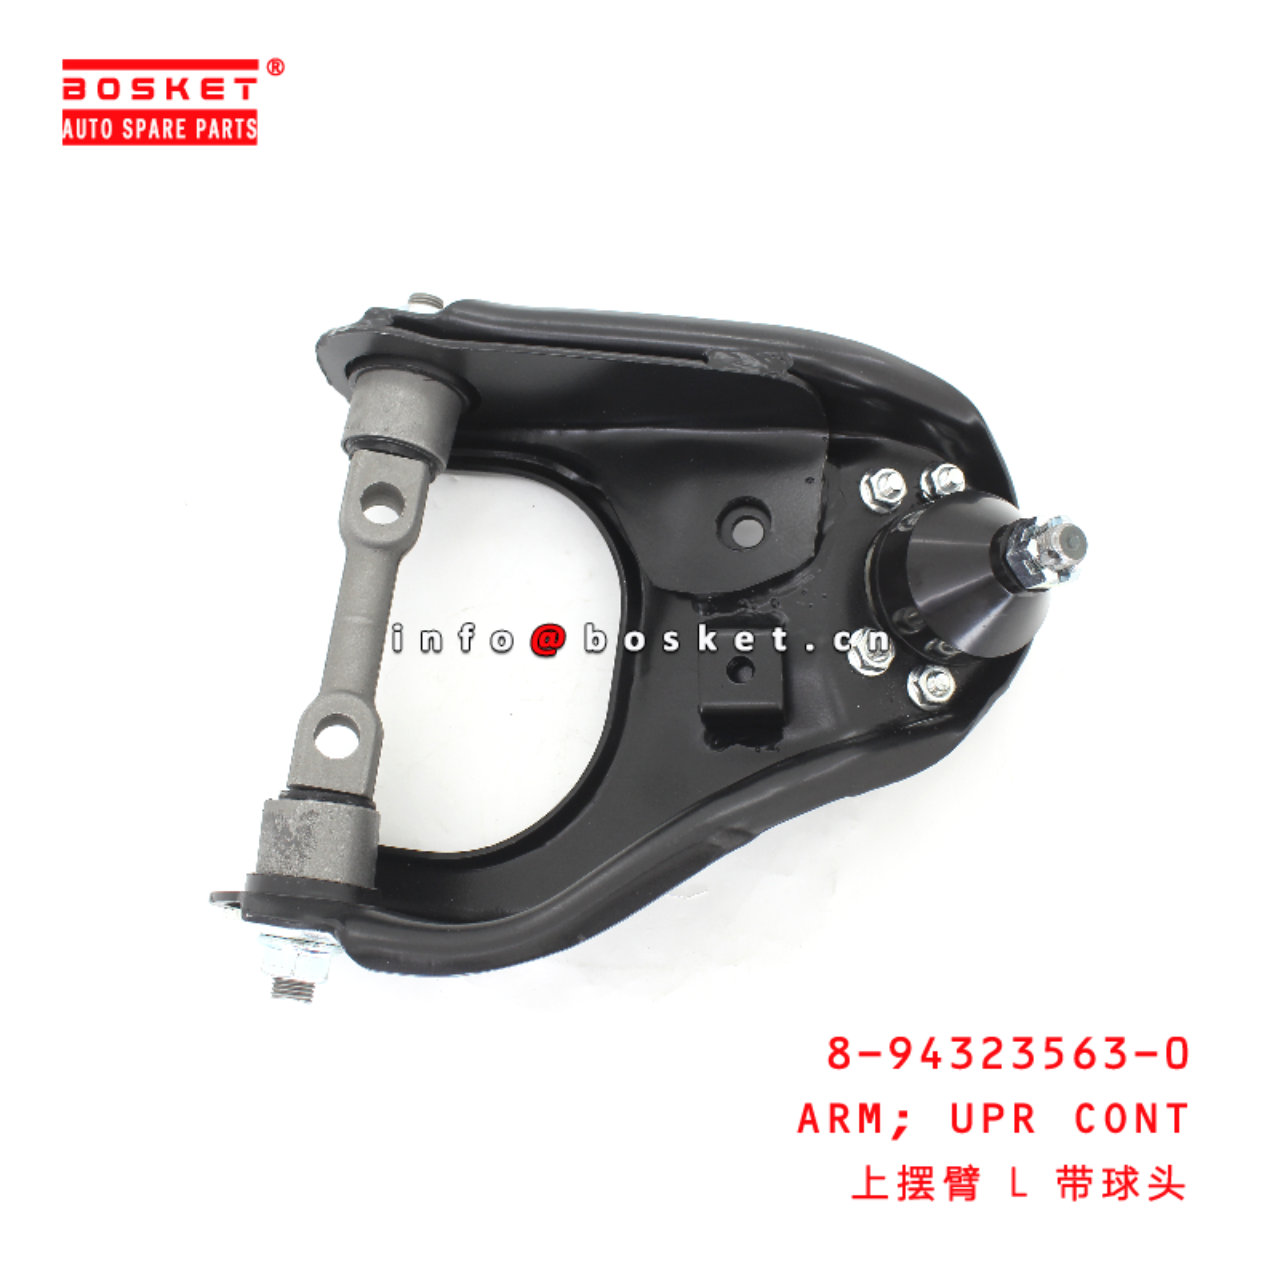 8-94323563-0 Upper Control Arm suitable for ISUZU D-MAX 8943235630